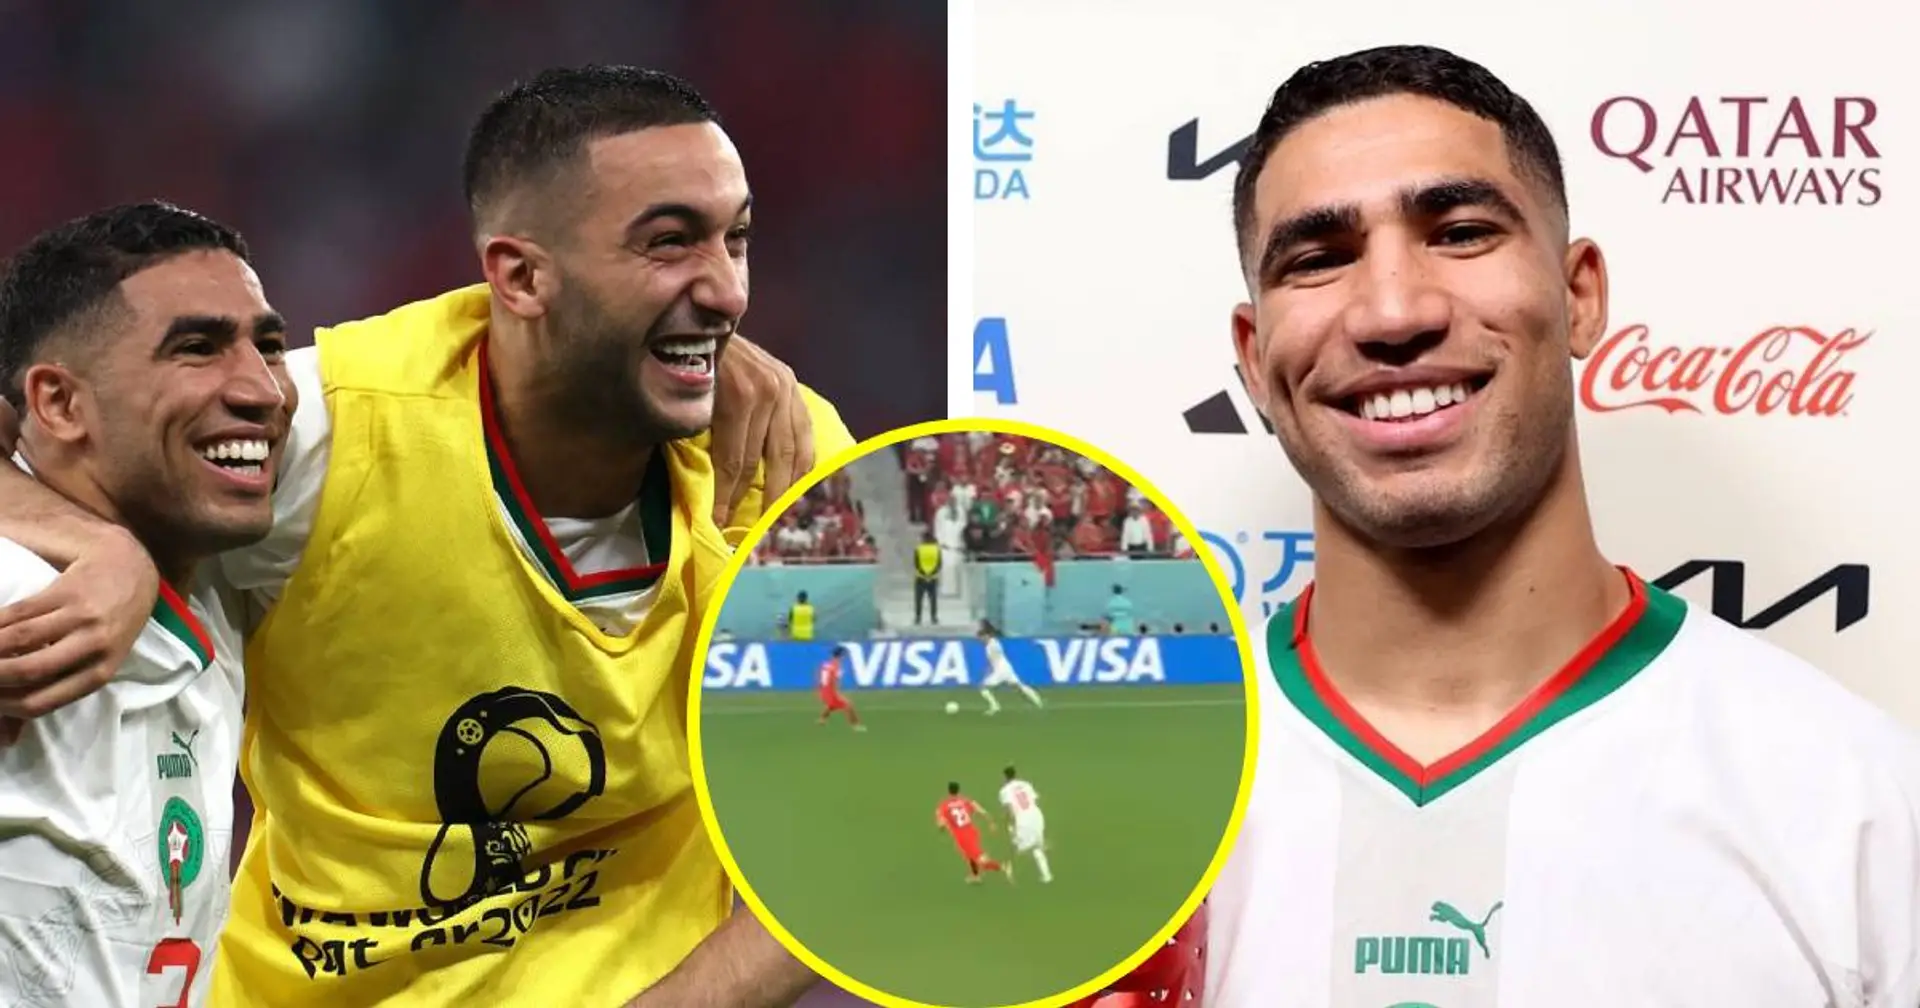 Le Maroc qualifié pour les huitièmes de finale de la Coupe du monde - Achraf Hakimi Homme du match